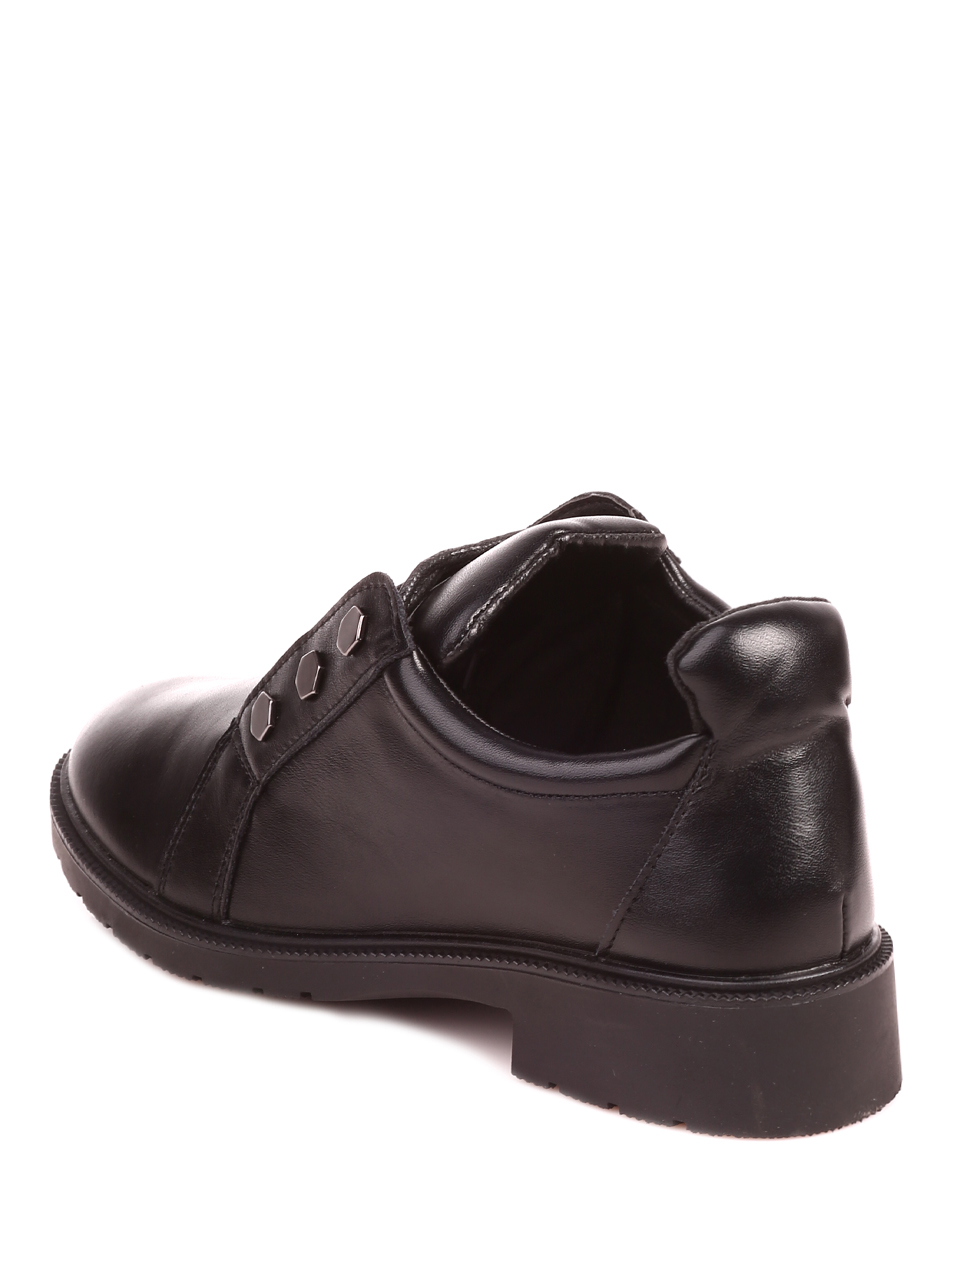 Ежедневни дамски обувки в черно 3R-22526 black pu